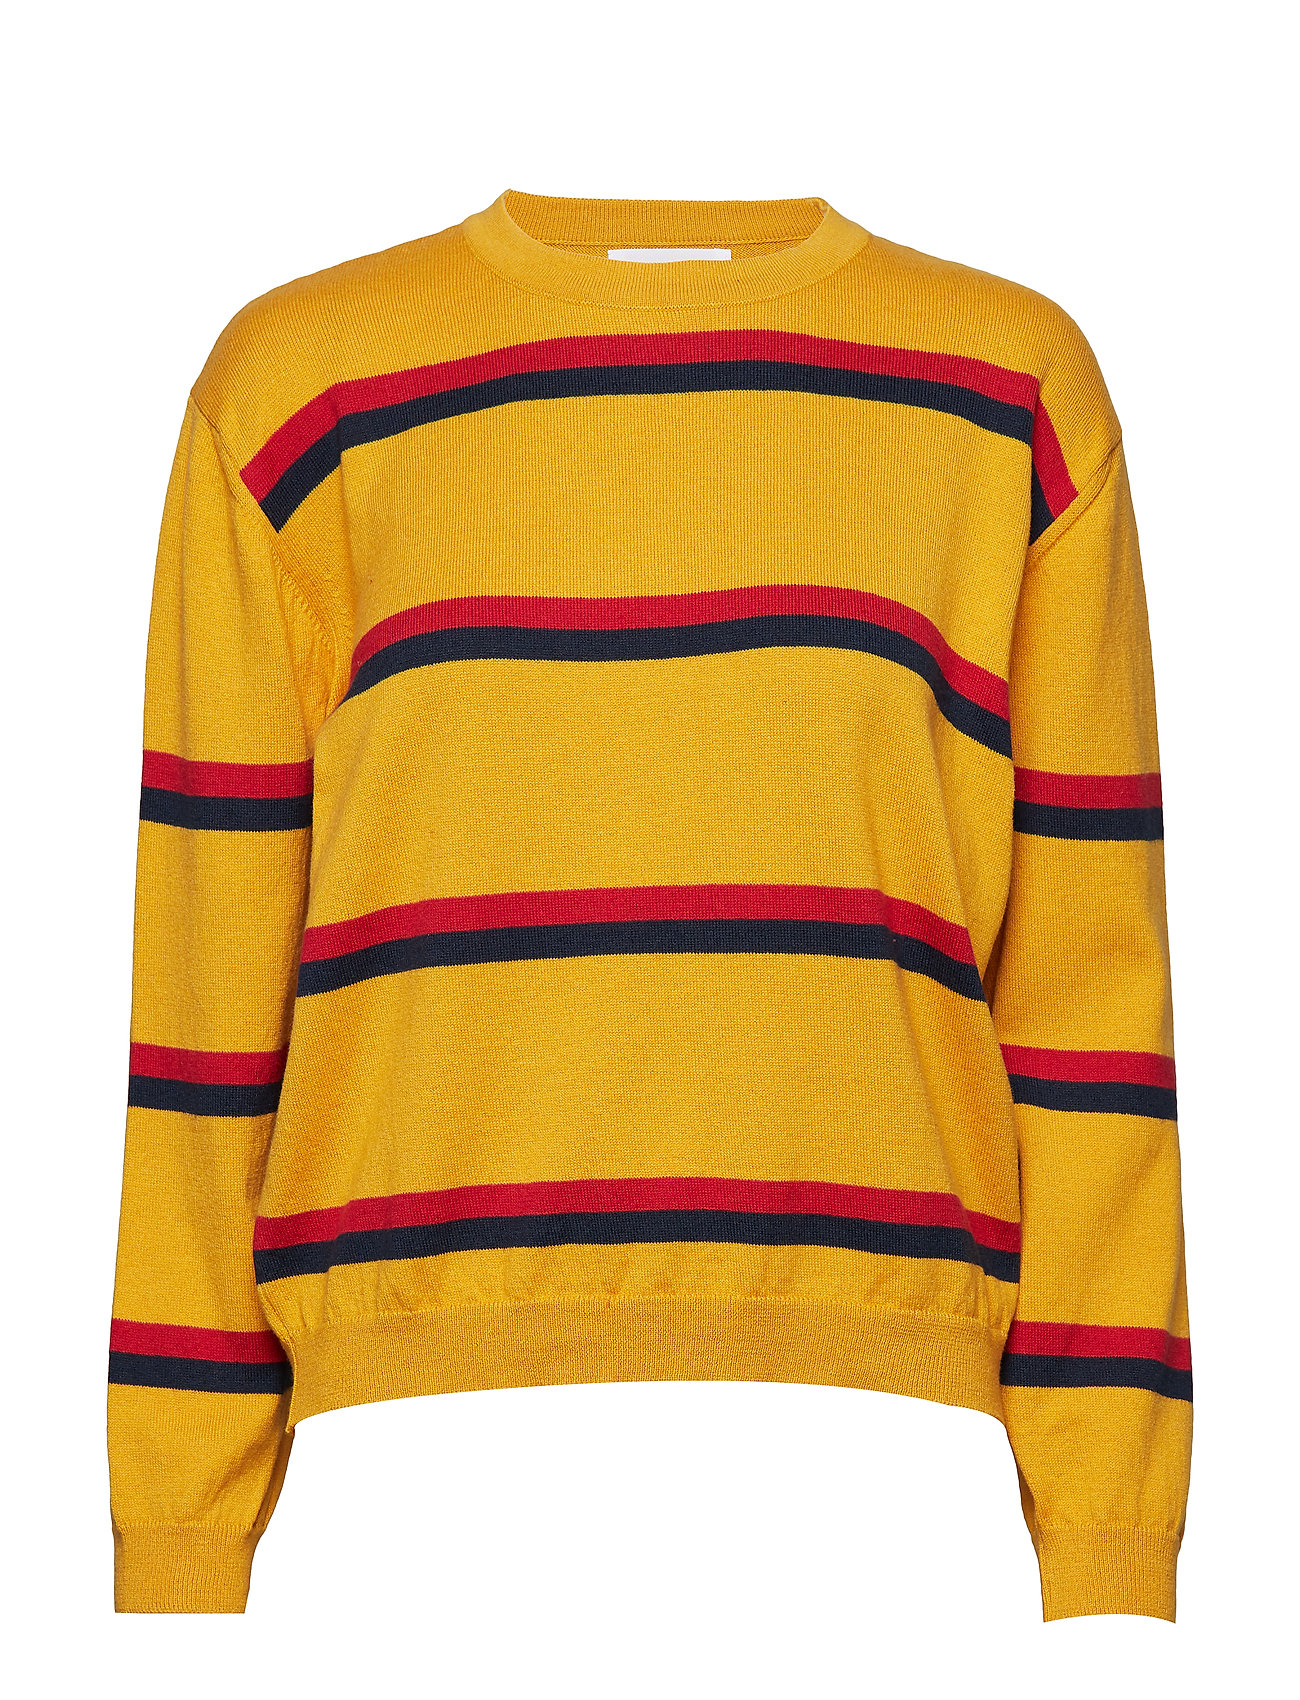 libertine-libertine-yellow-ocher-cotton-call-stripes-knit-longsleeve-sweater